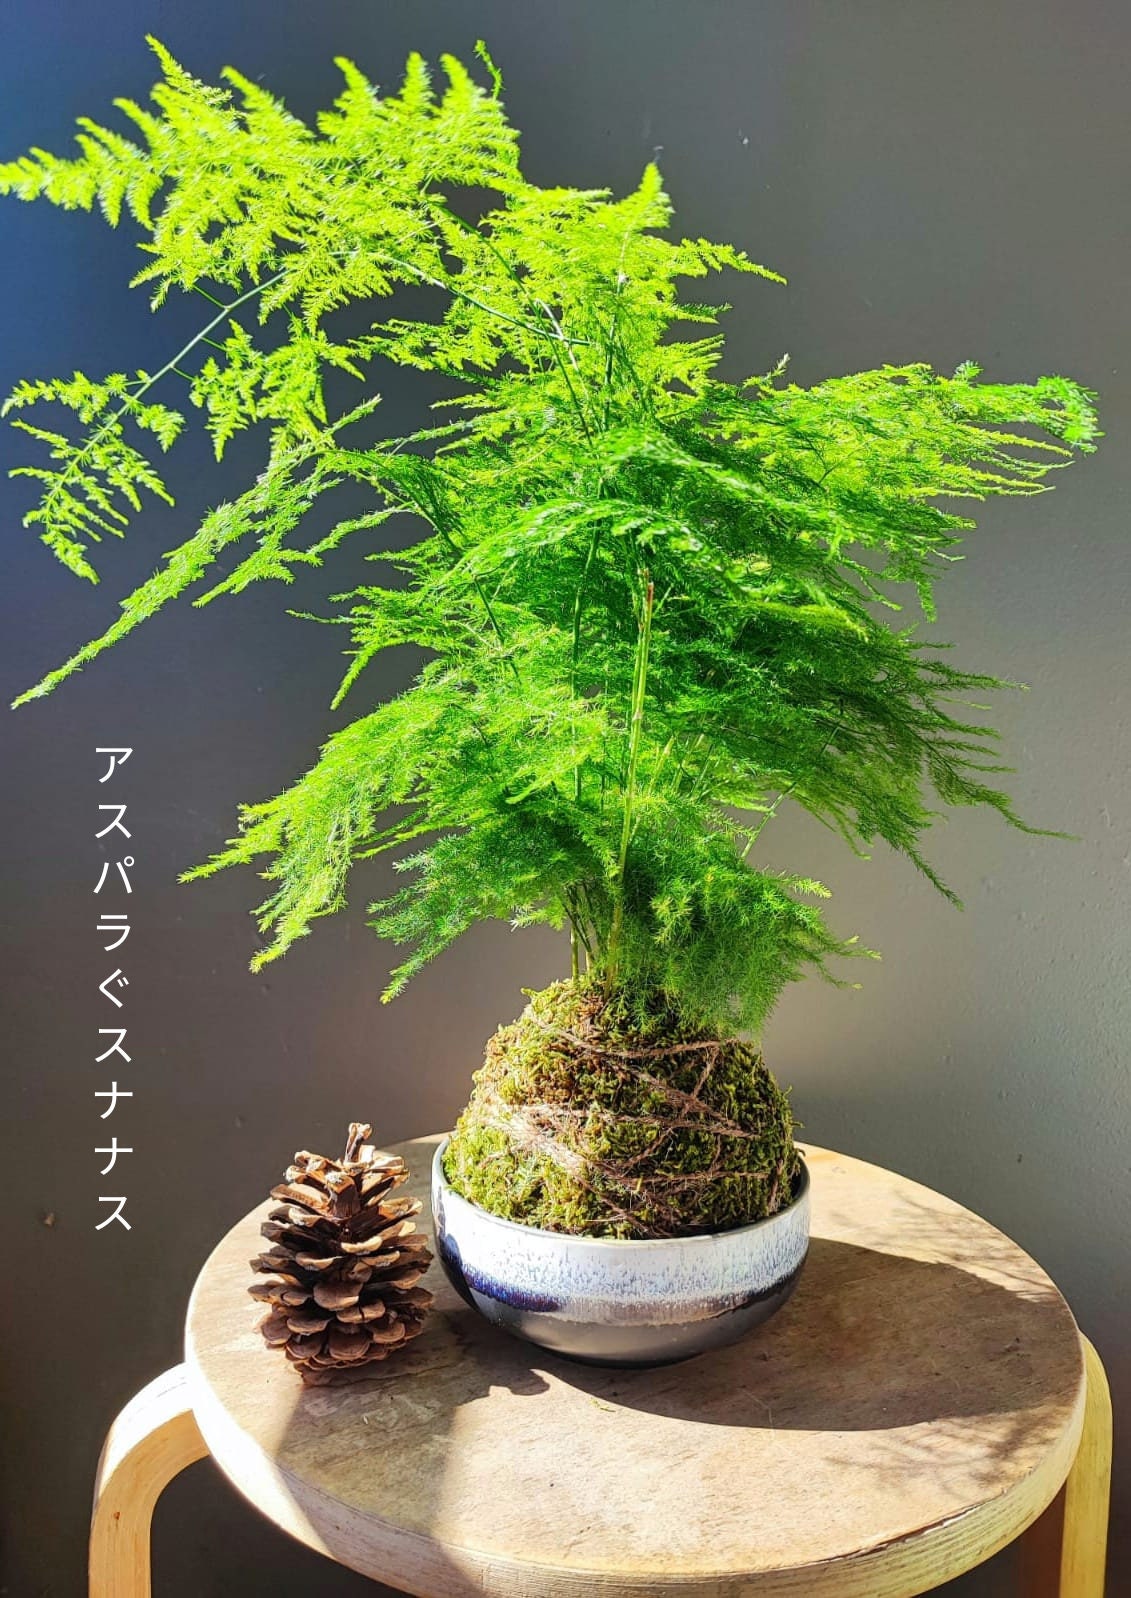 Cultivea - Mini Kit Zen Bonsai - Tutoriel vidéo 